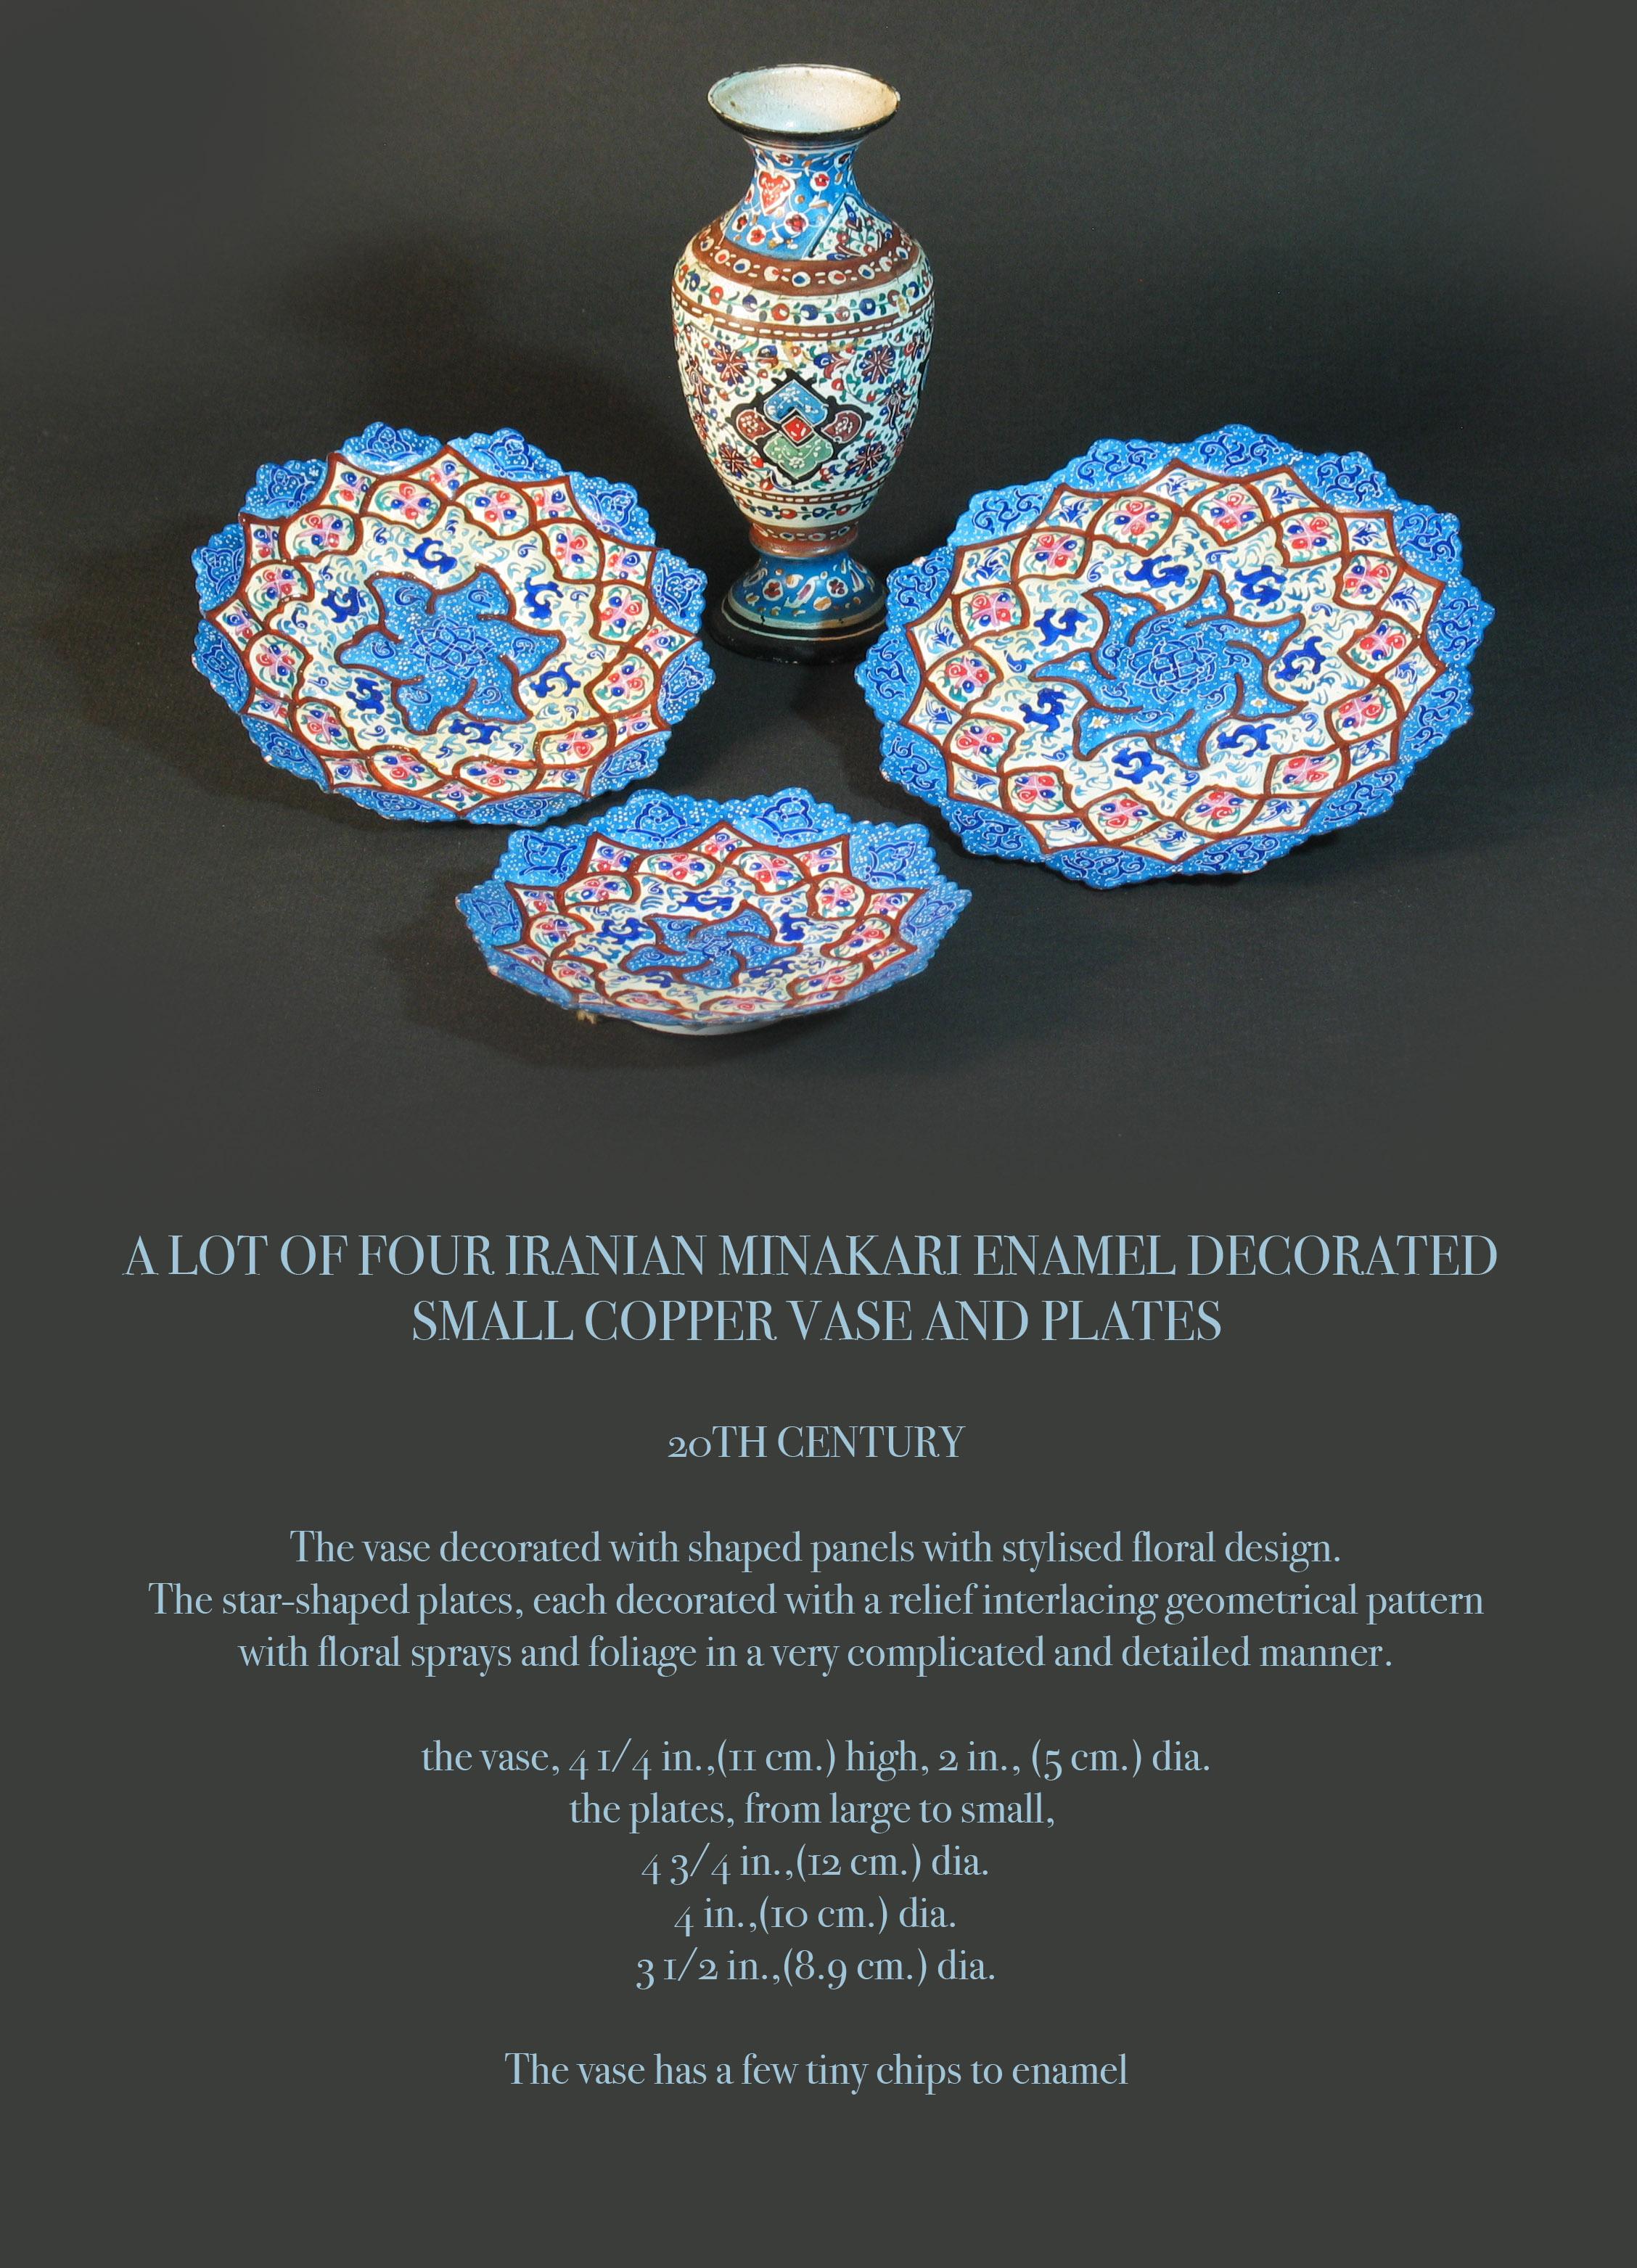 Lot de quatre pièces iraniennes en émail minakari décorées
Petit vase et assiettes en cuivre

20ème siècle.

Le vase est décoré de panneaux façonnés avec des motifs floraux stylisés.
Les assiettes en forme d'étoile, chacune décorée d'un motif